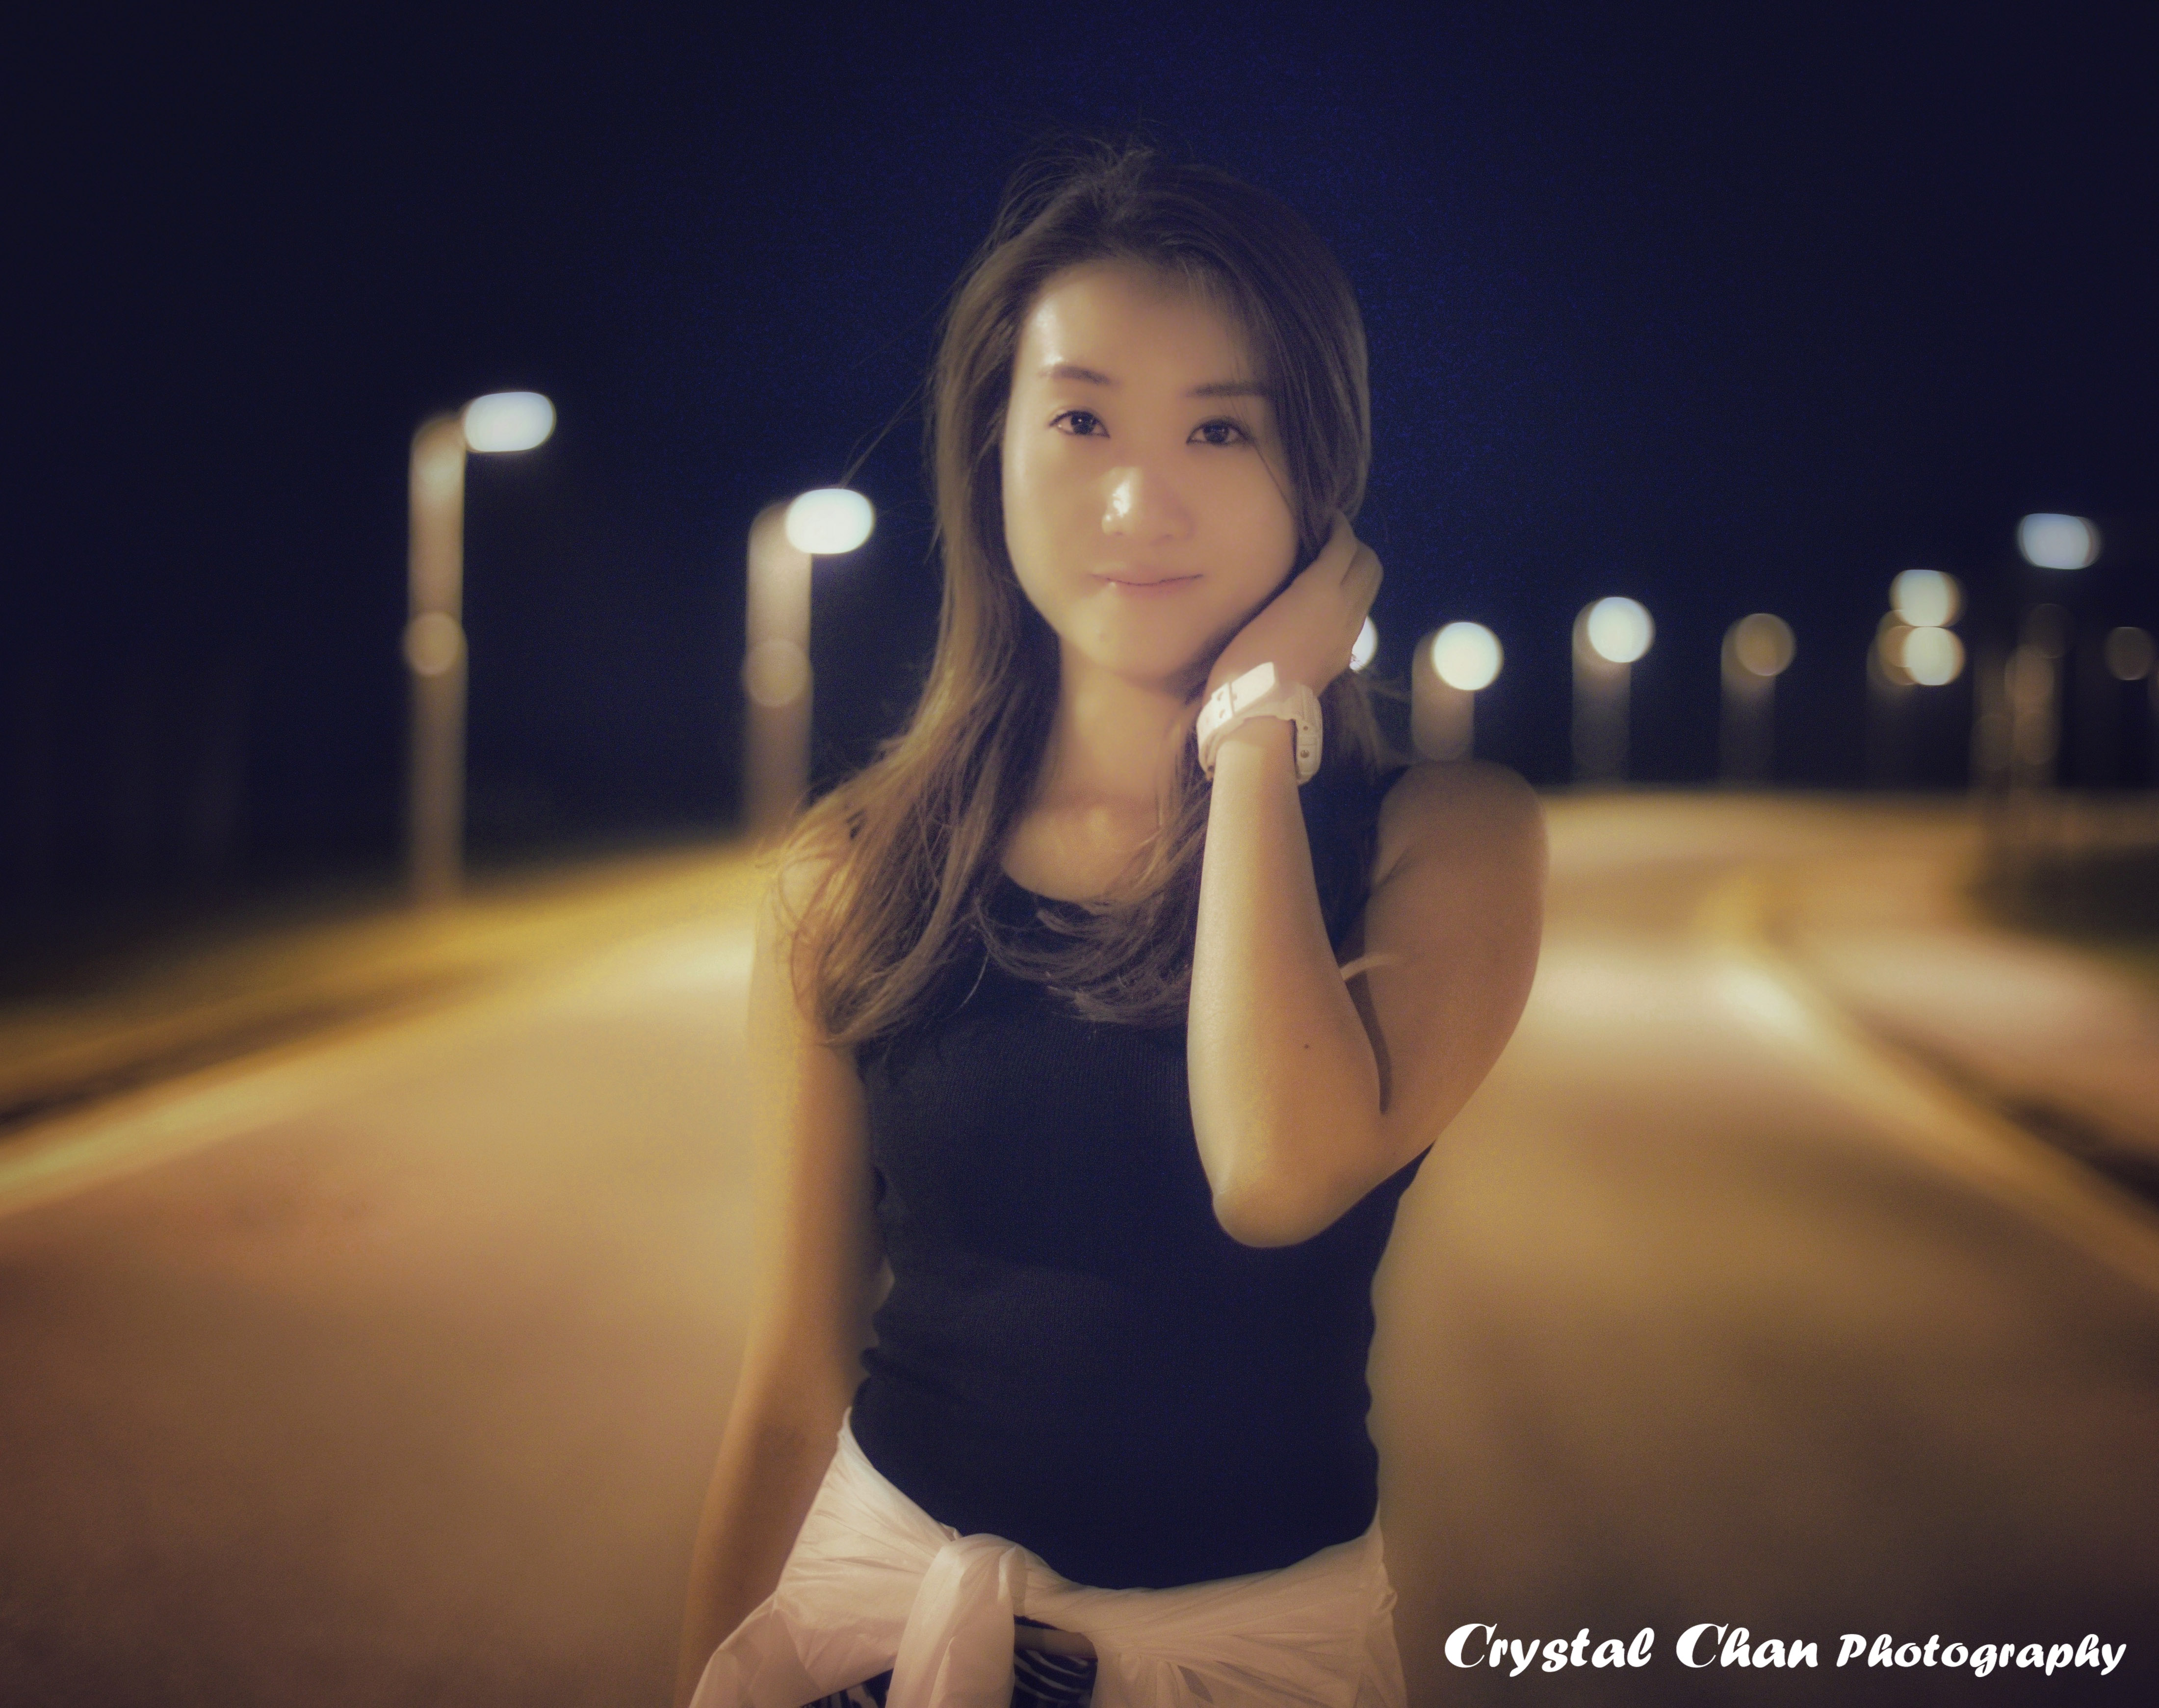 Crystal Chan之攝影師紀錄: 戶外夜景人像攝影